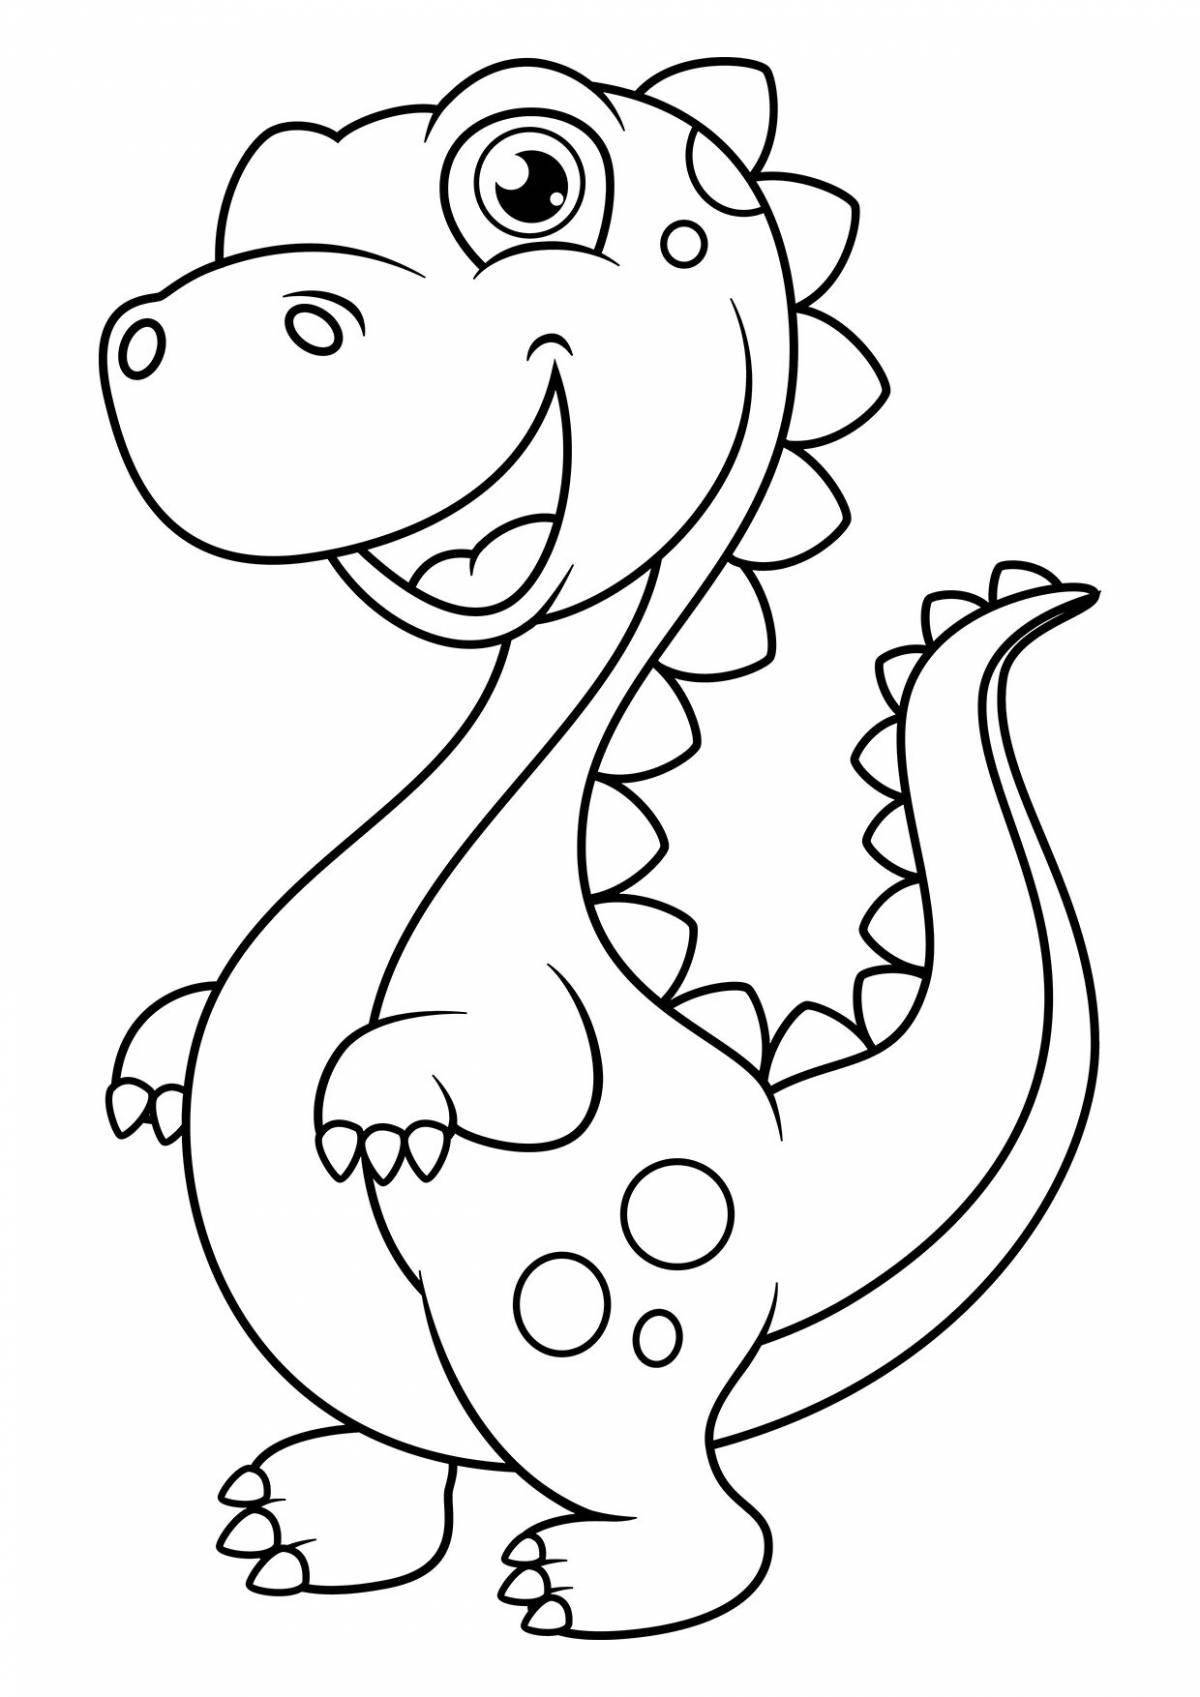 Incredible dinosaur coloring book for kids